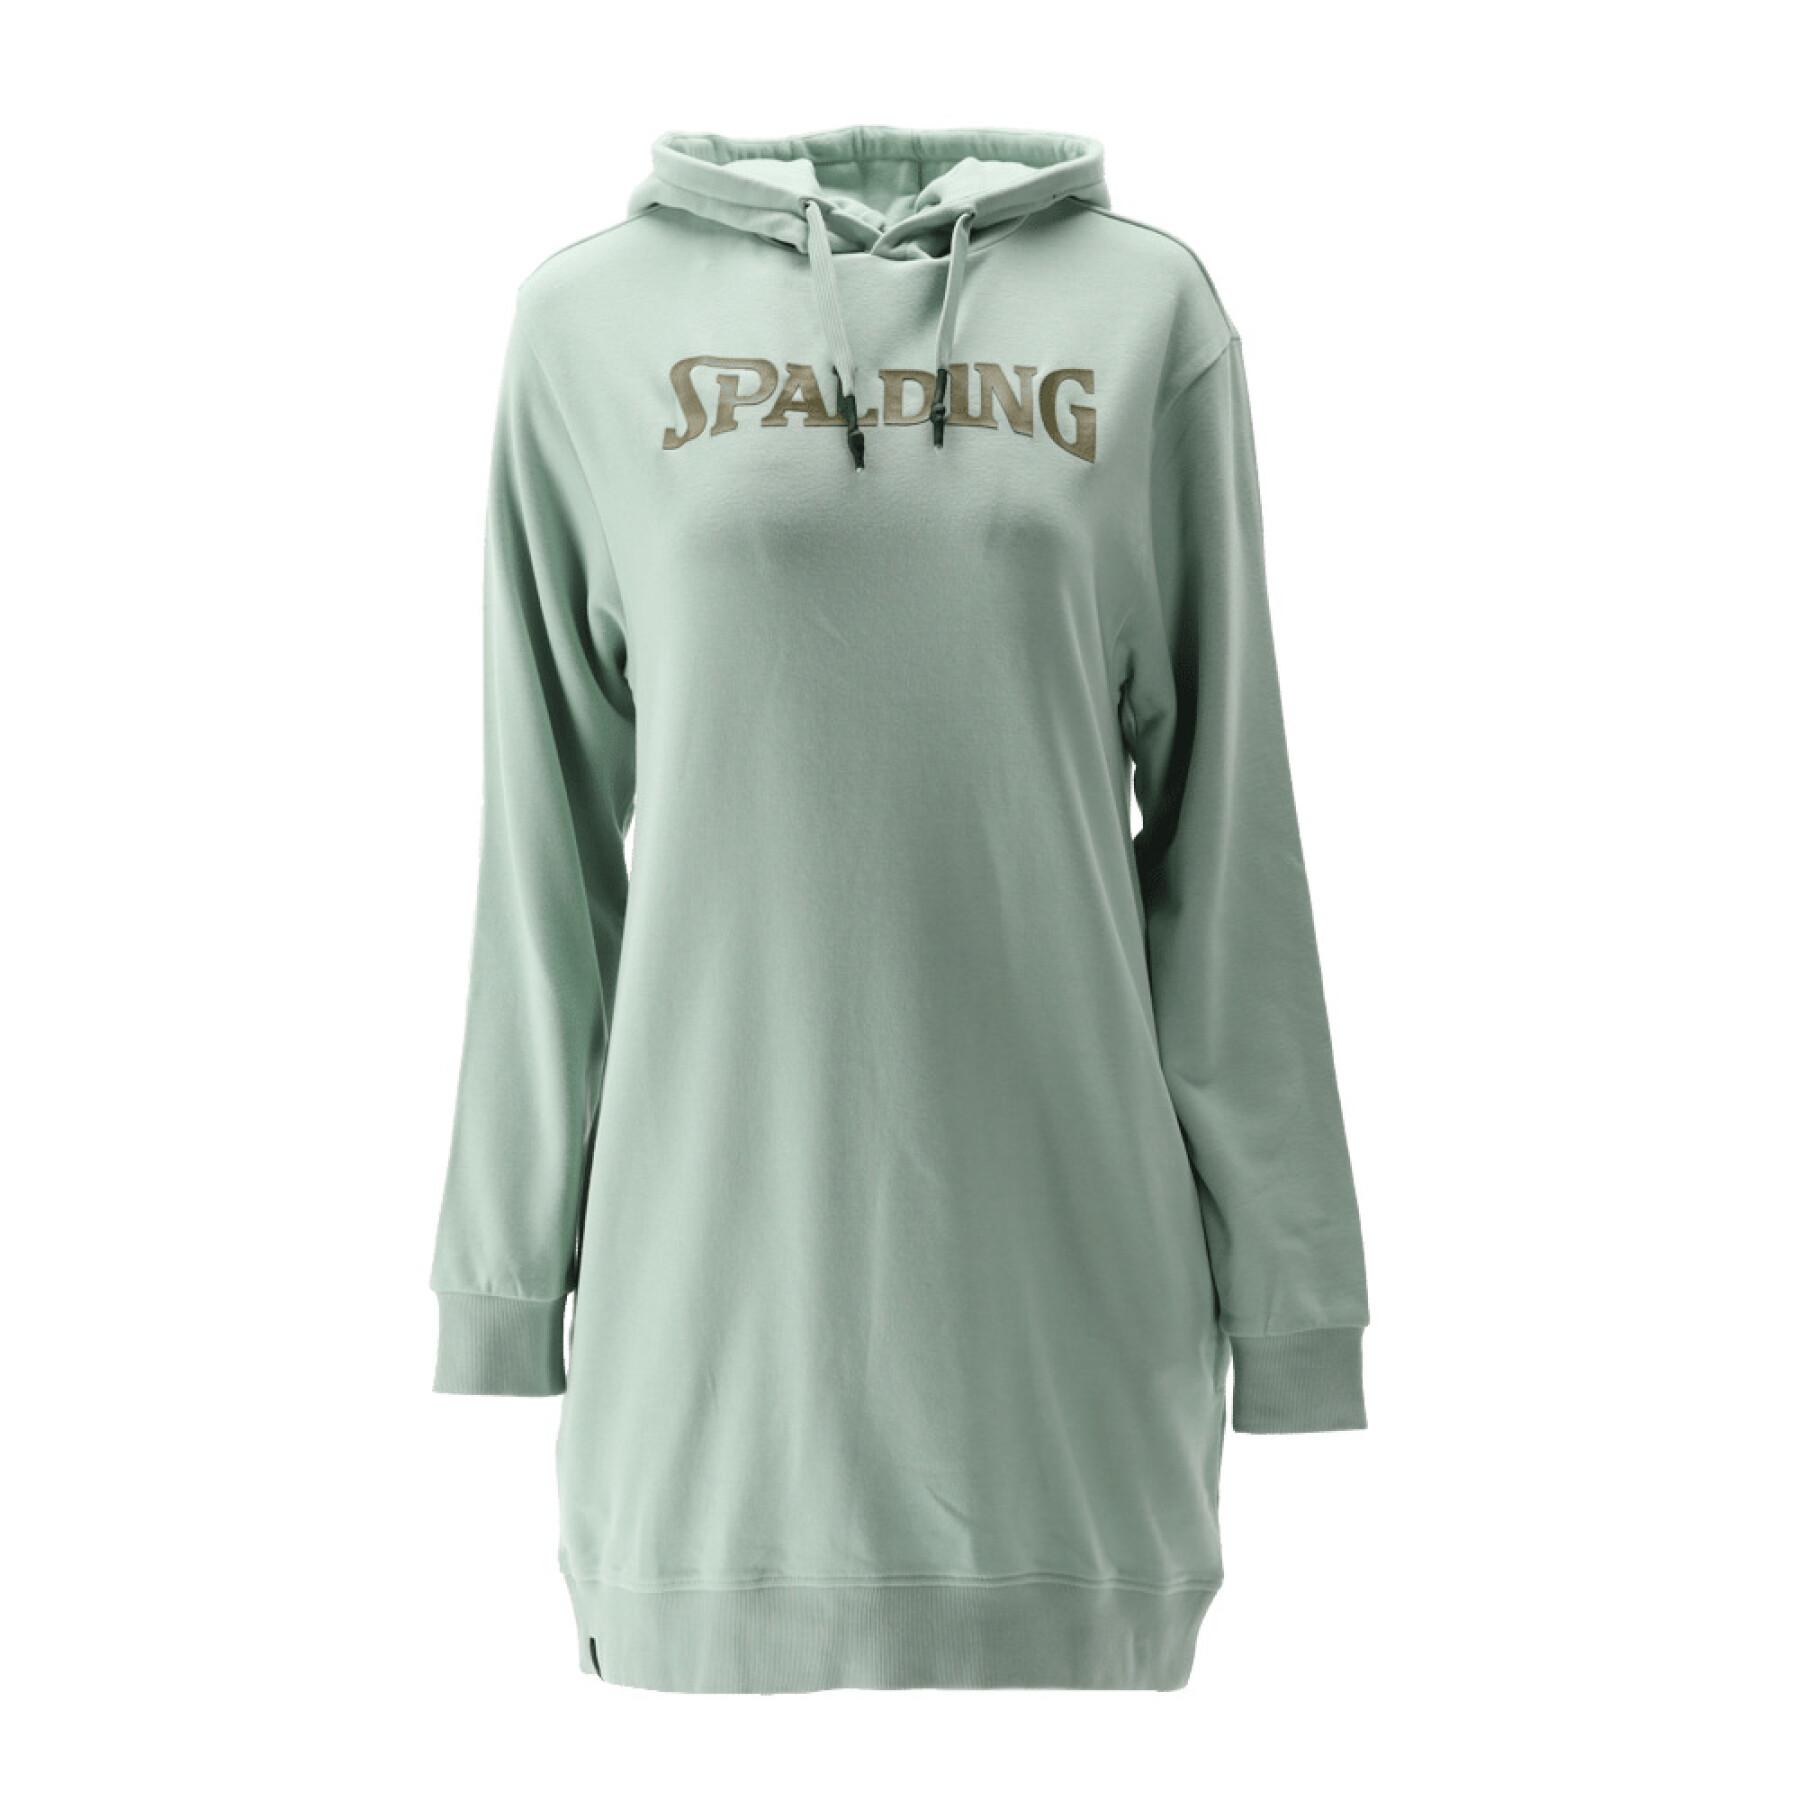 Vestido sweatshirt con capucha para mujer Spalding